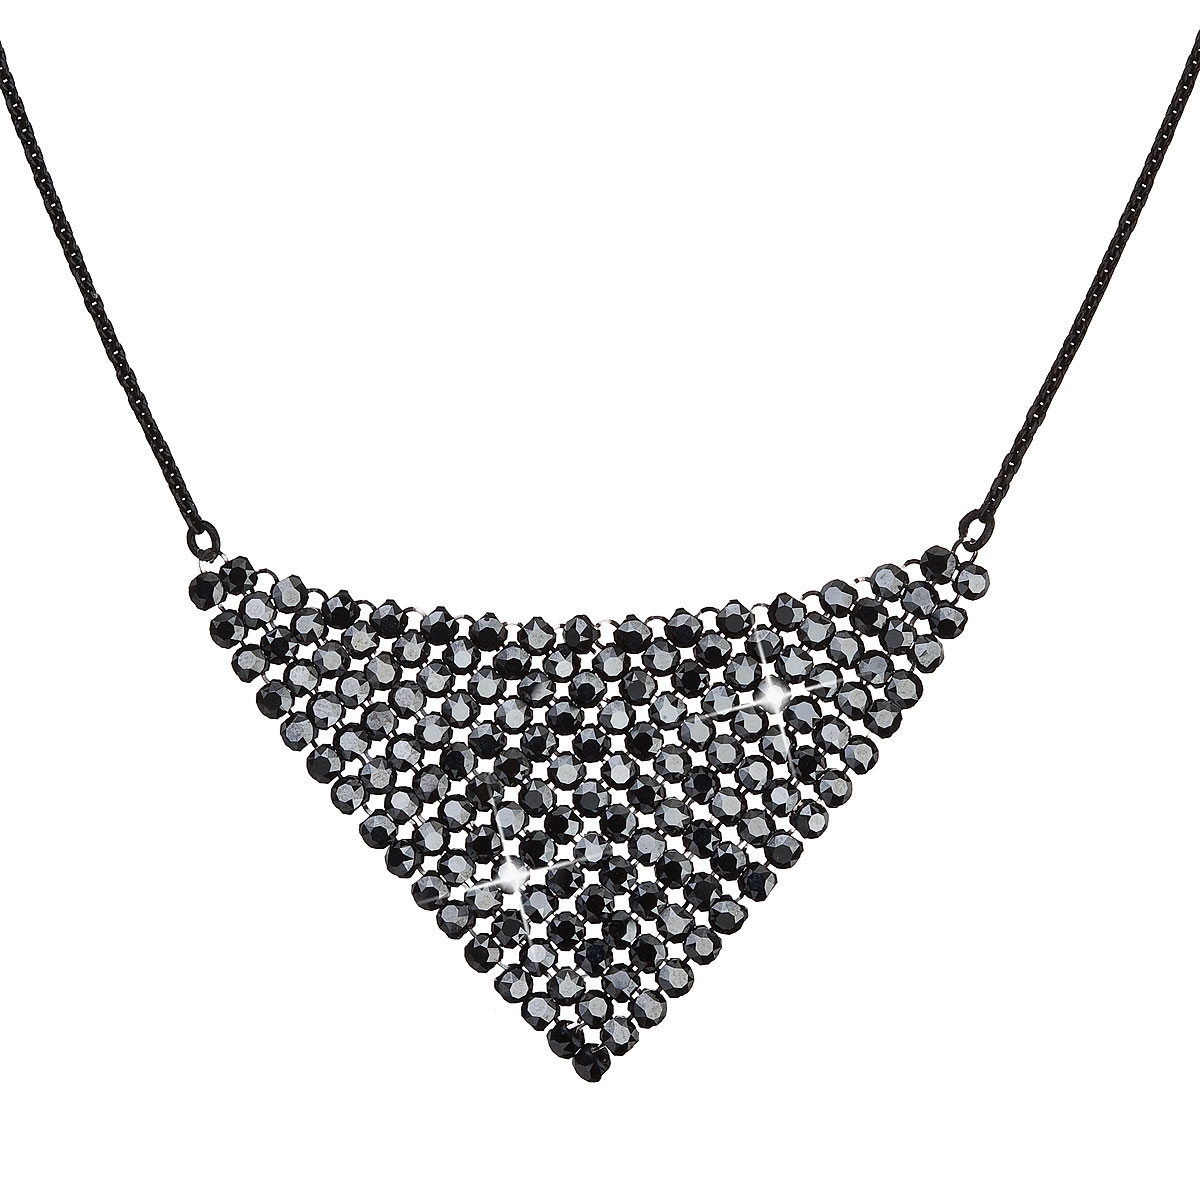 Strieborný náhrdelník s kryštálmi Crystals from Swarovski ® Black